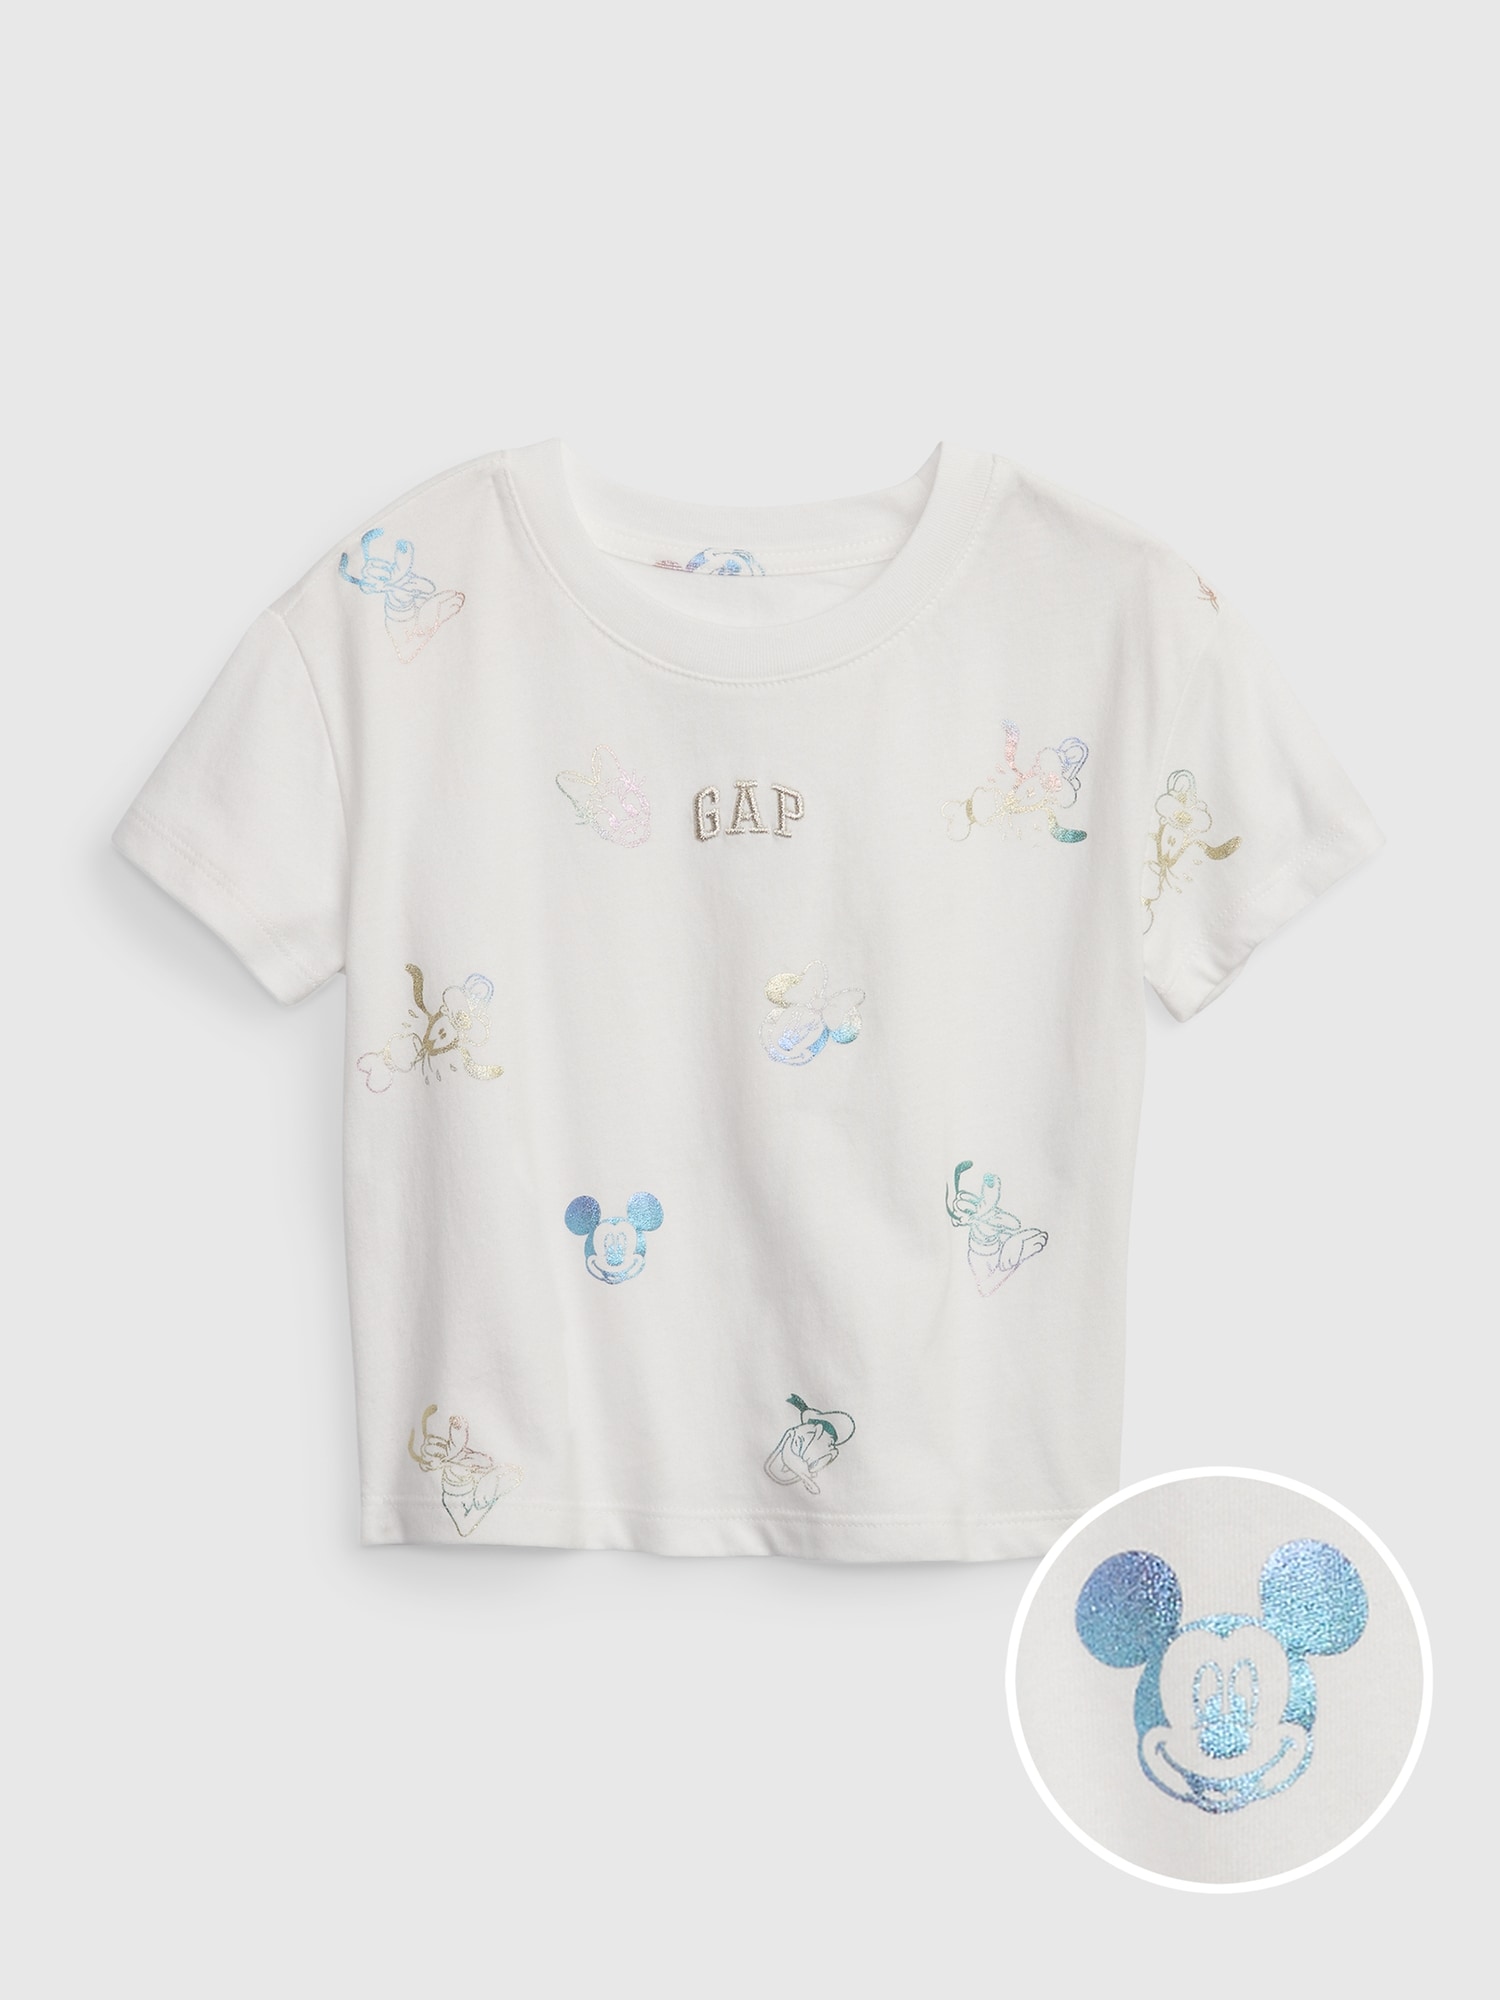 babyGap ディズニー ミッキーマウス オーガニックコットン100% グラフィックTシャツ (幼児・ユニセックス)